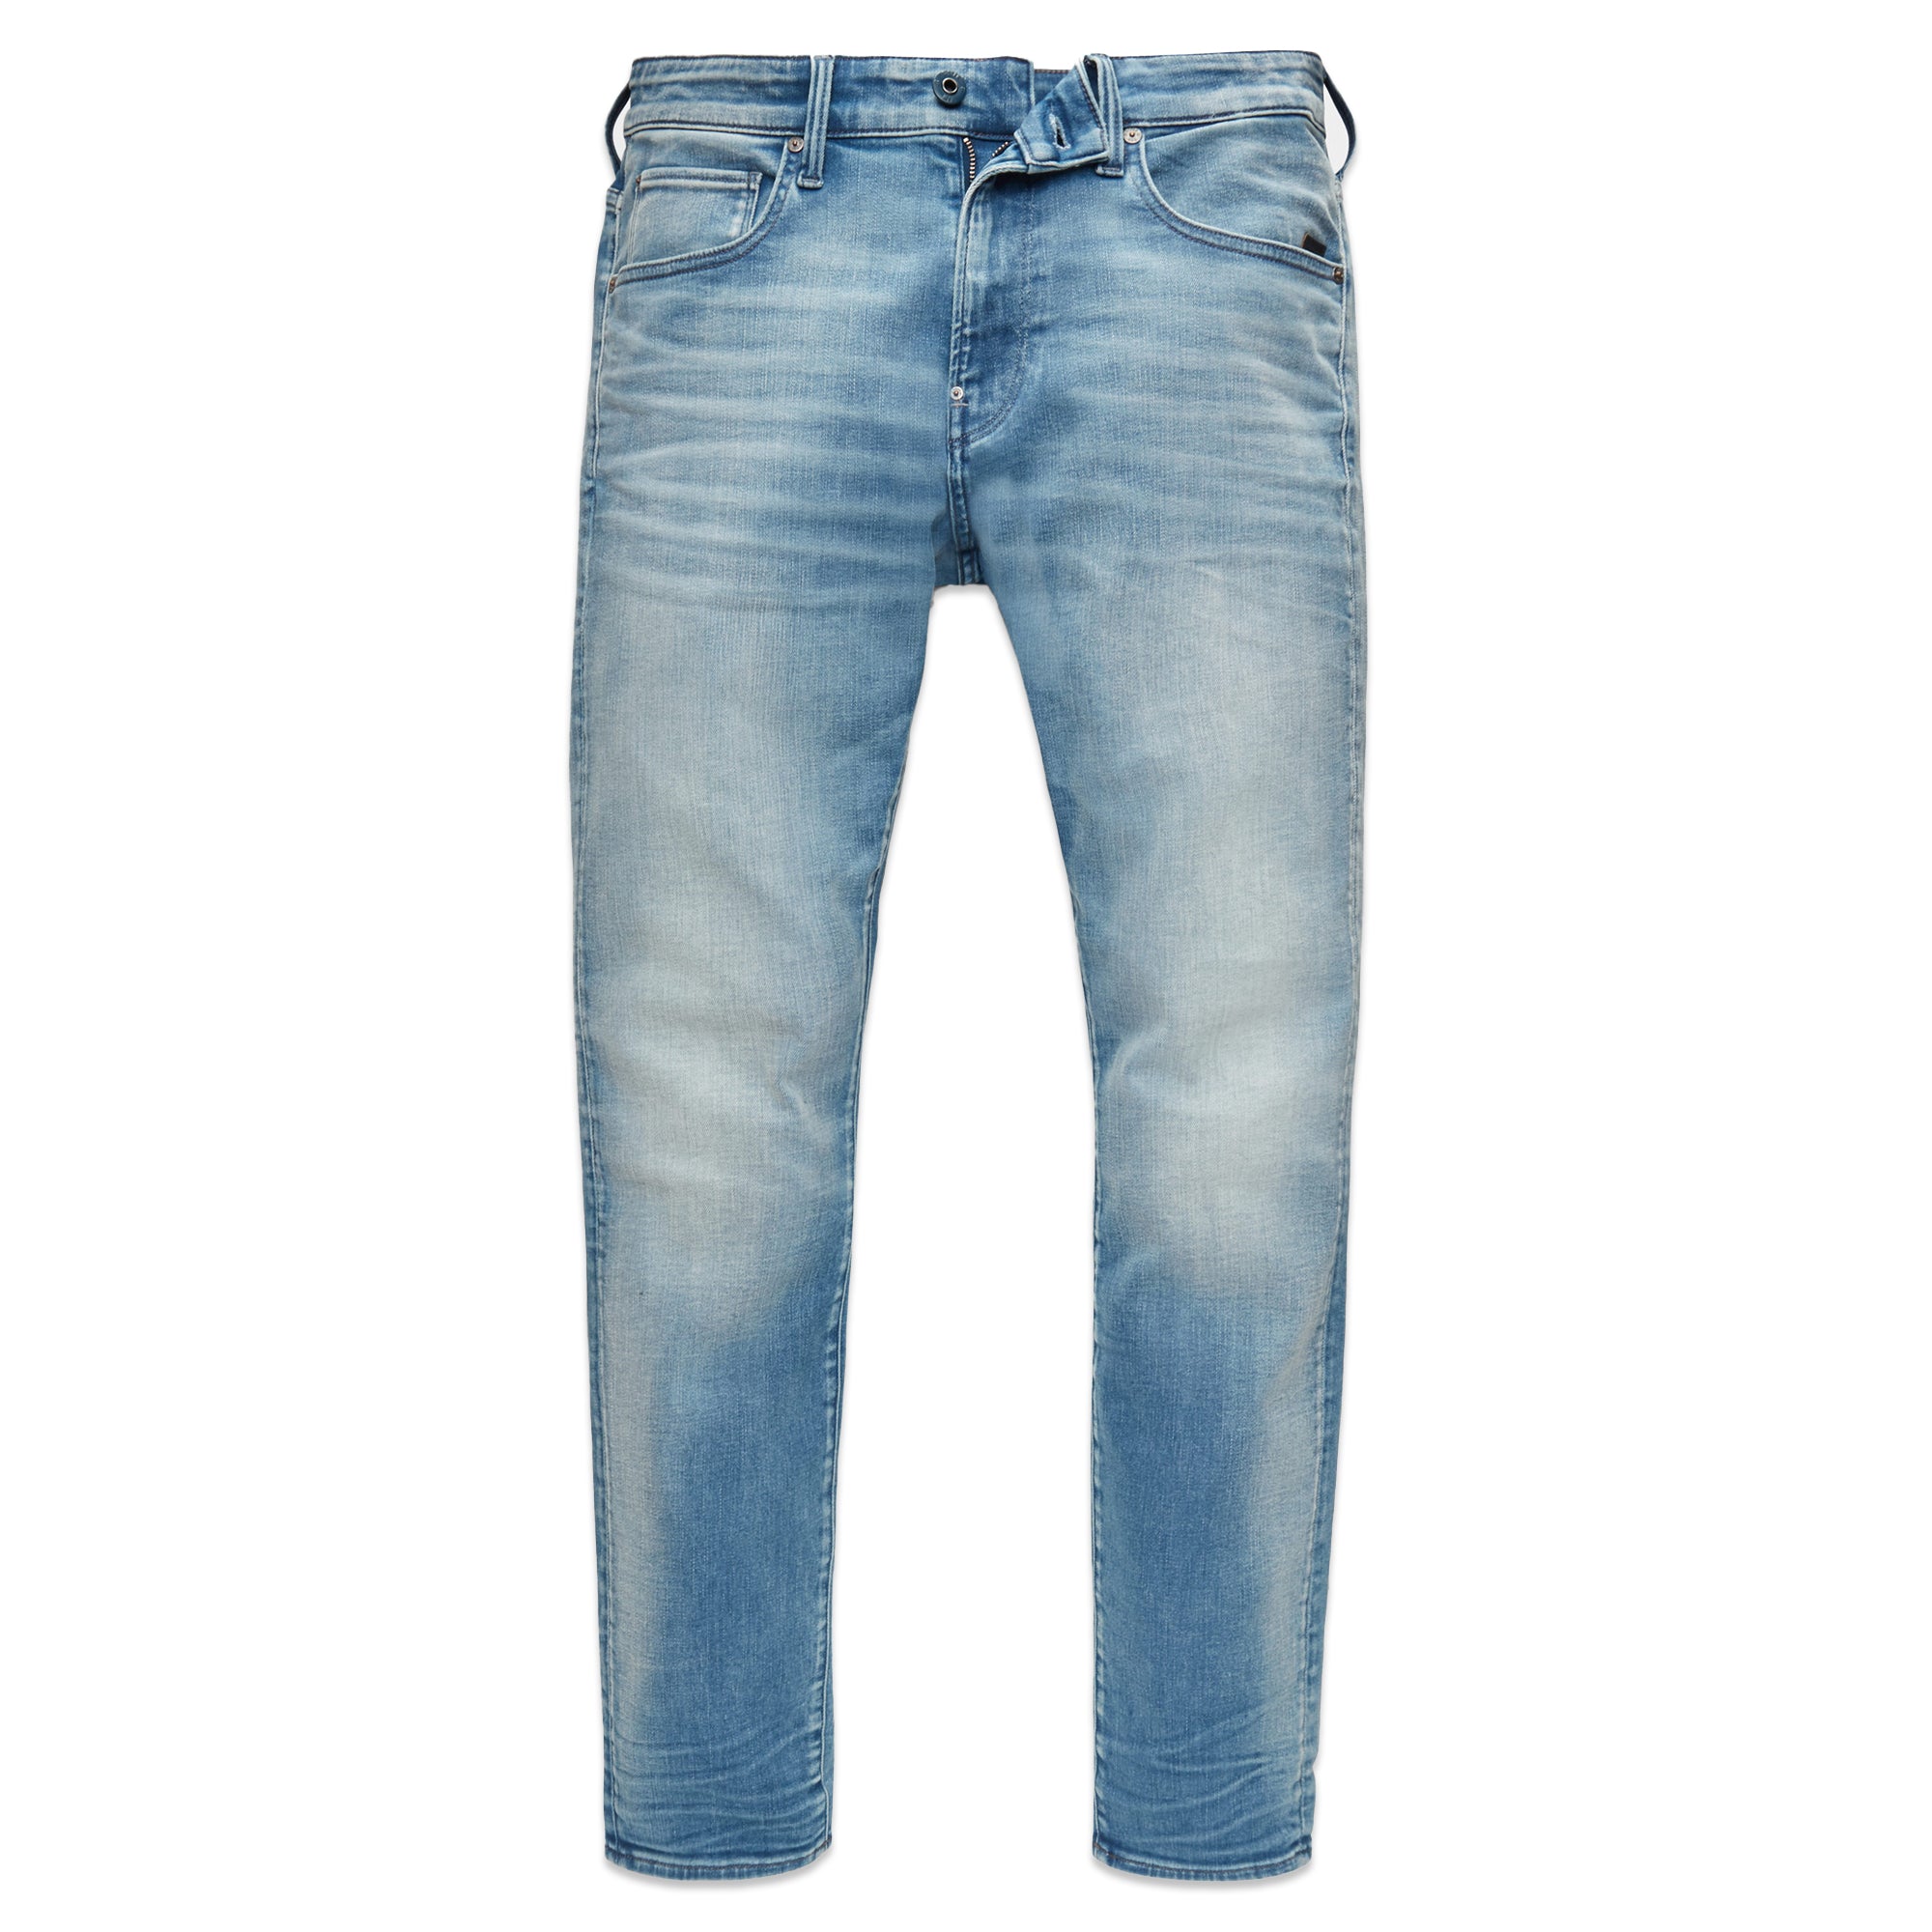 G-Star Revend Skinny Jeans - Elto Vintage Beryl Blue Superstretch